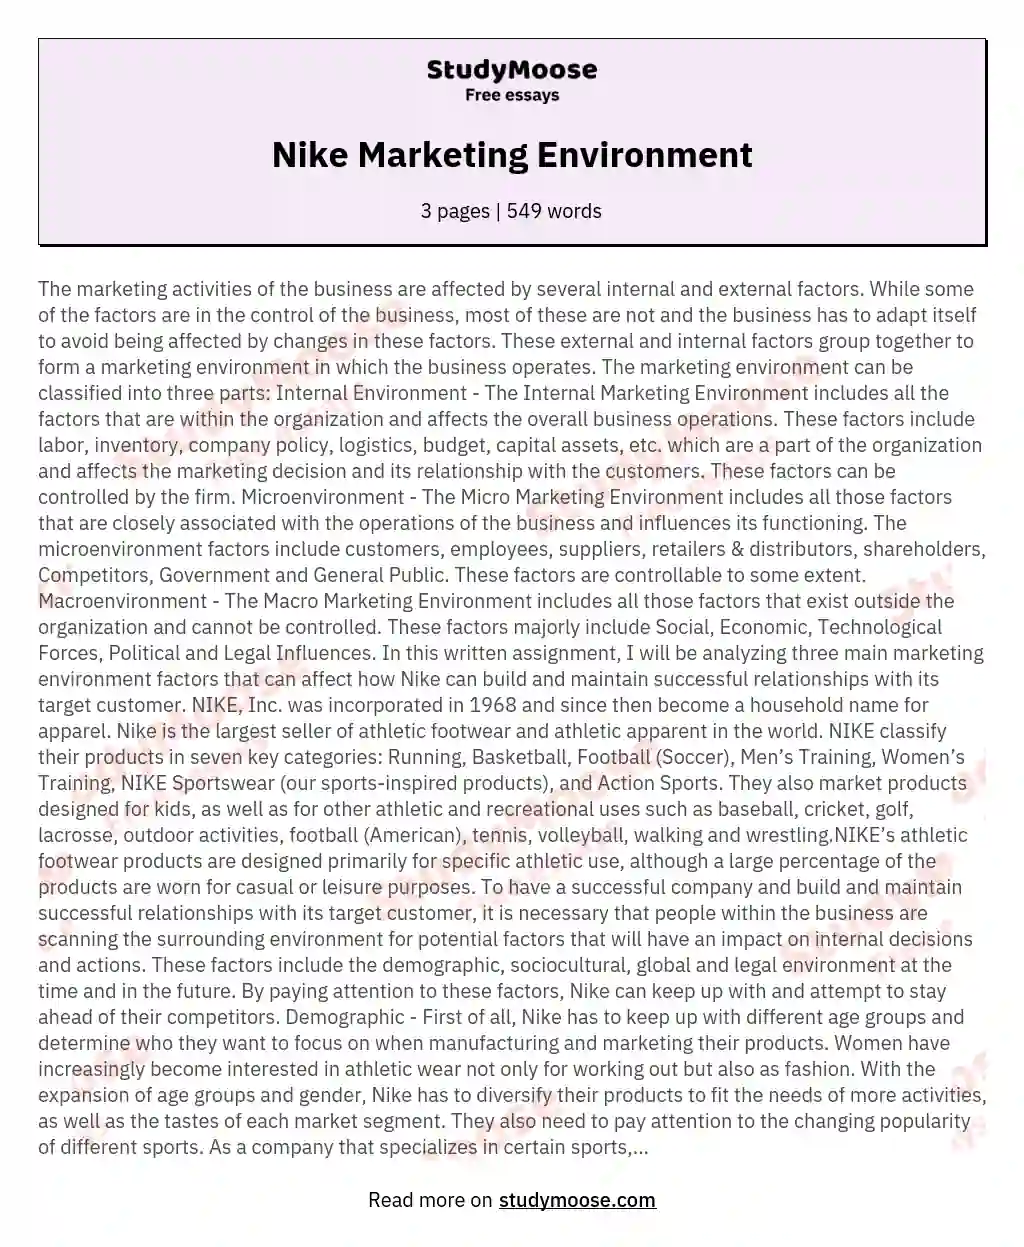 market environment essay grade 10